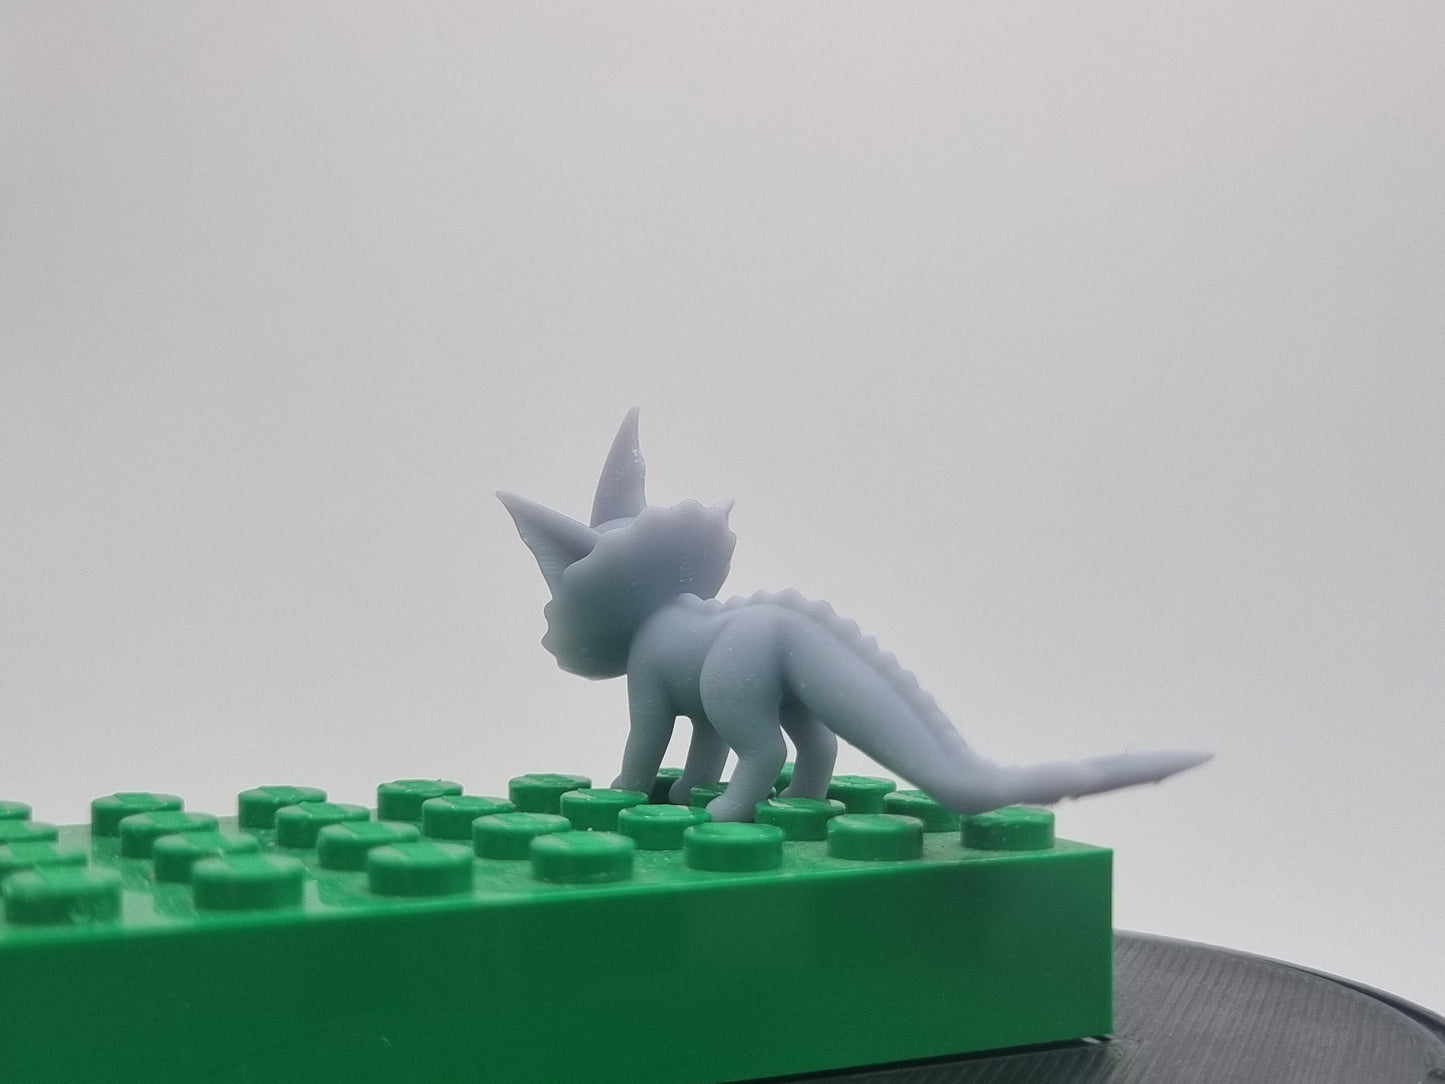 Building toy custom 3D printed waterdog!